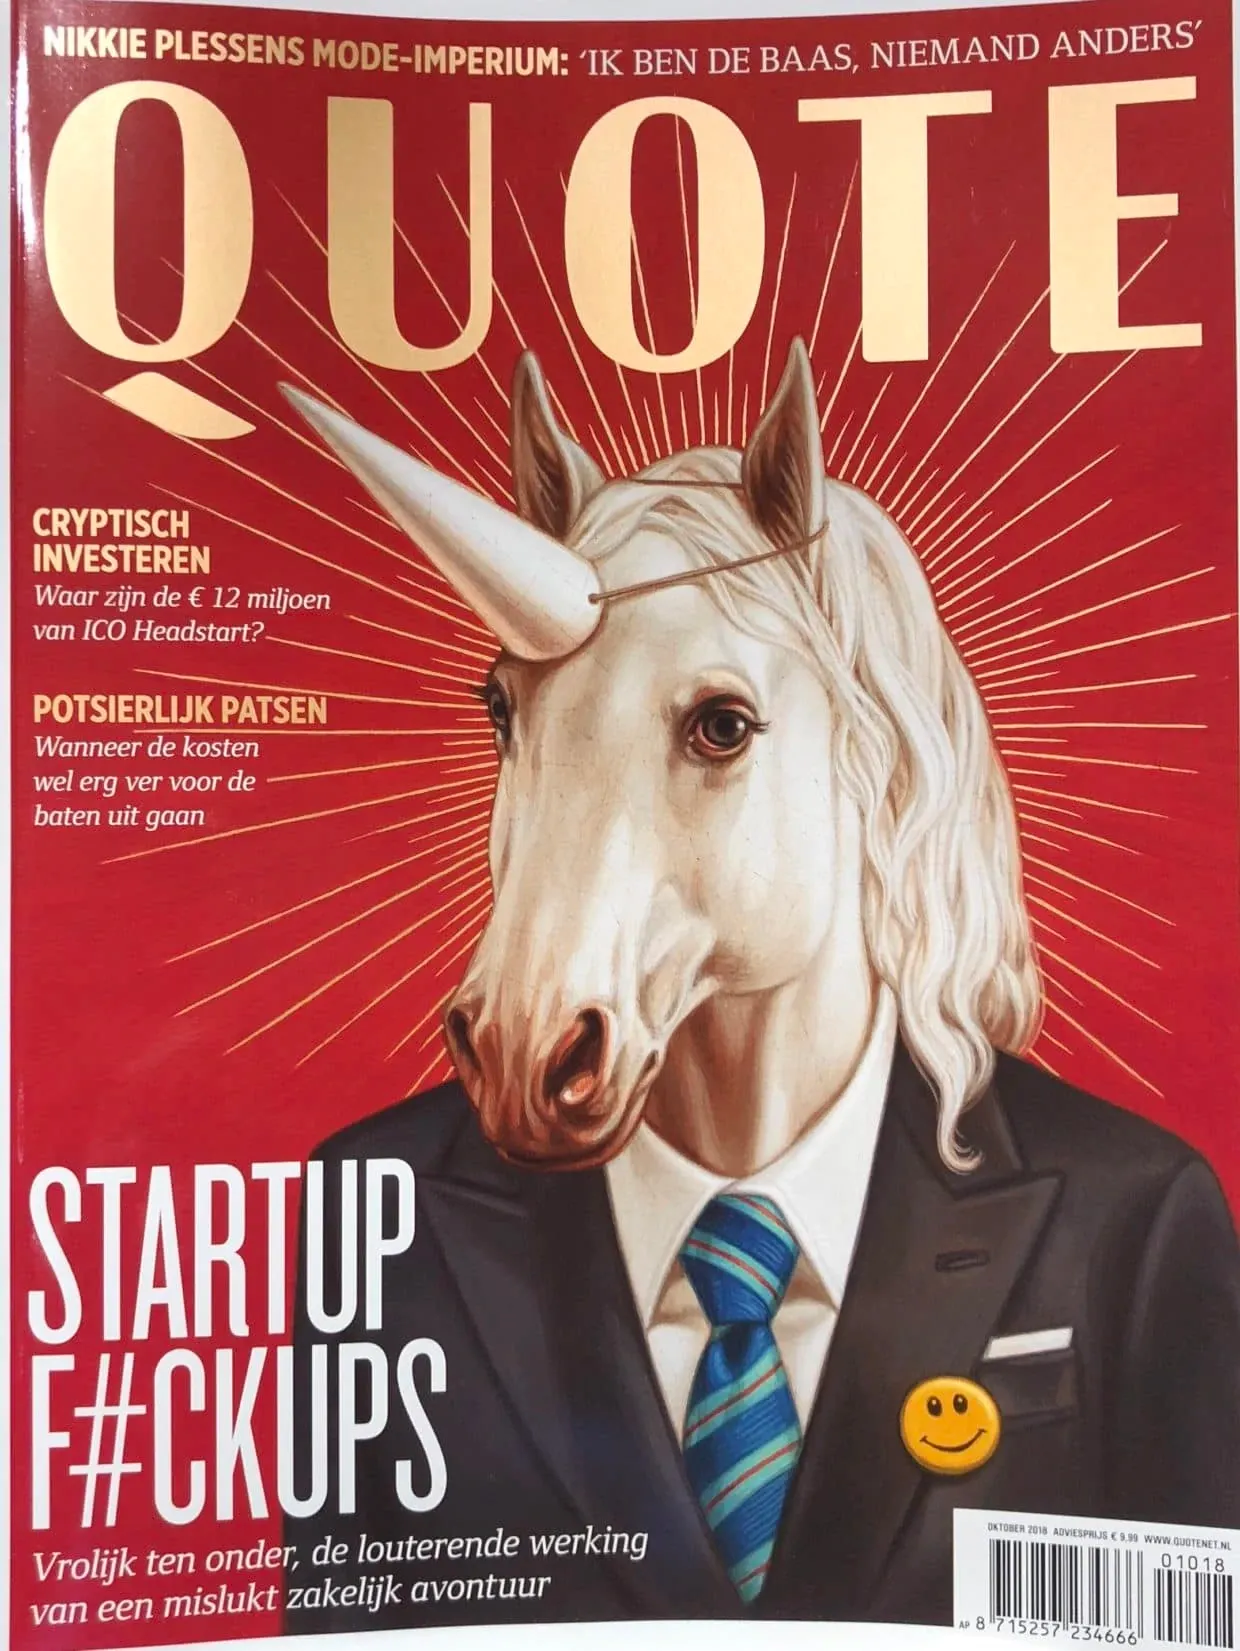 startup fuckups - quote magazine